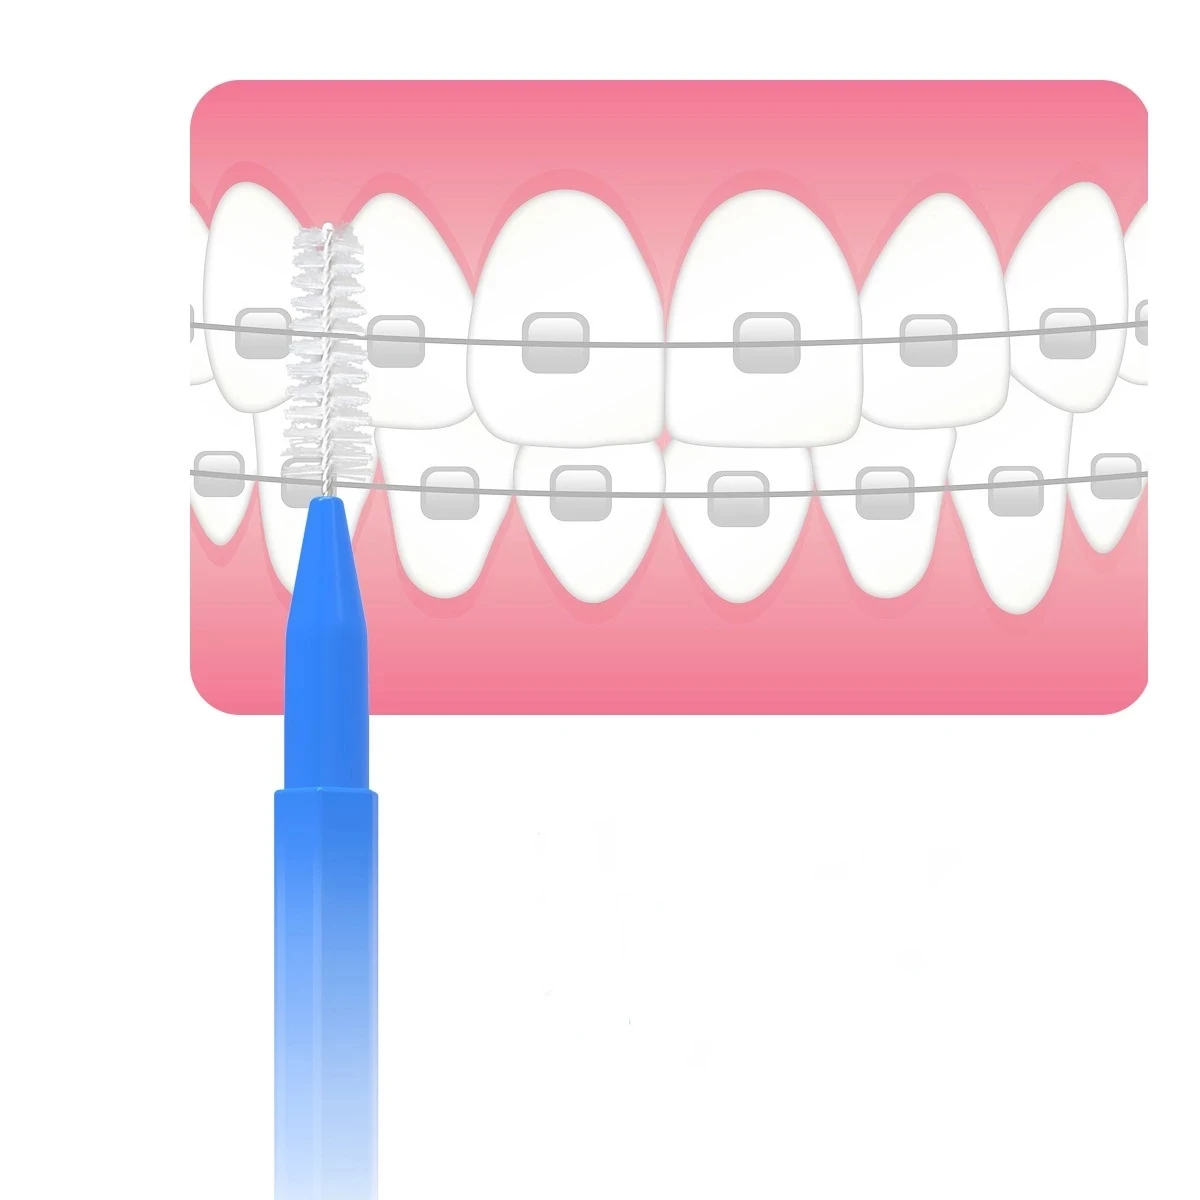 30/60/120Pcs szczoteczki międzyzębowe do pielęgnacji zębów Escova międzyzębowych środków do higiena jamy ustnej ortodontycznych szczoteczka do zębów dentystycznych